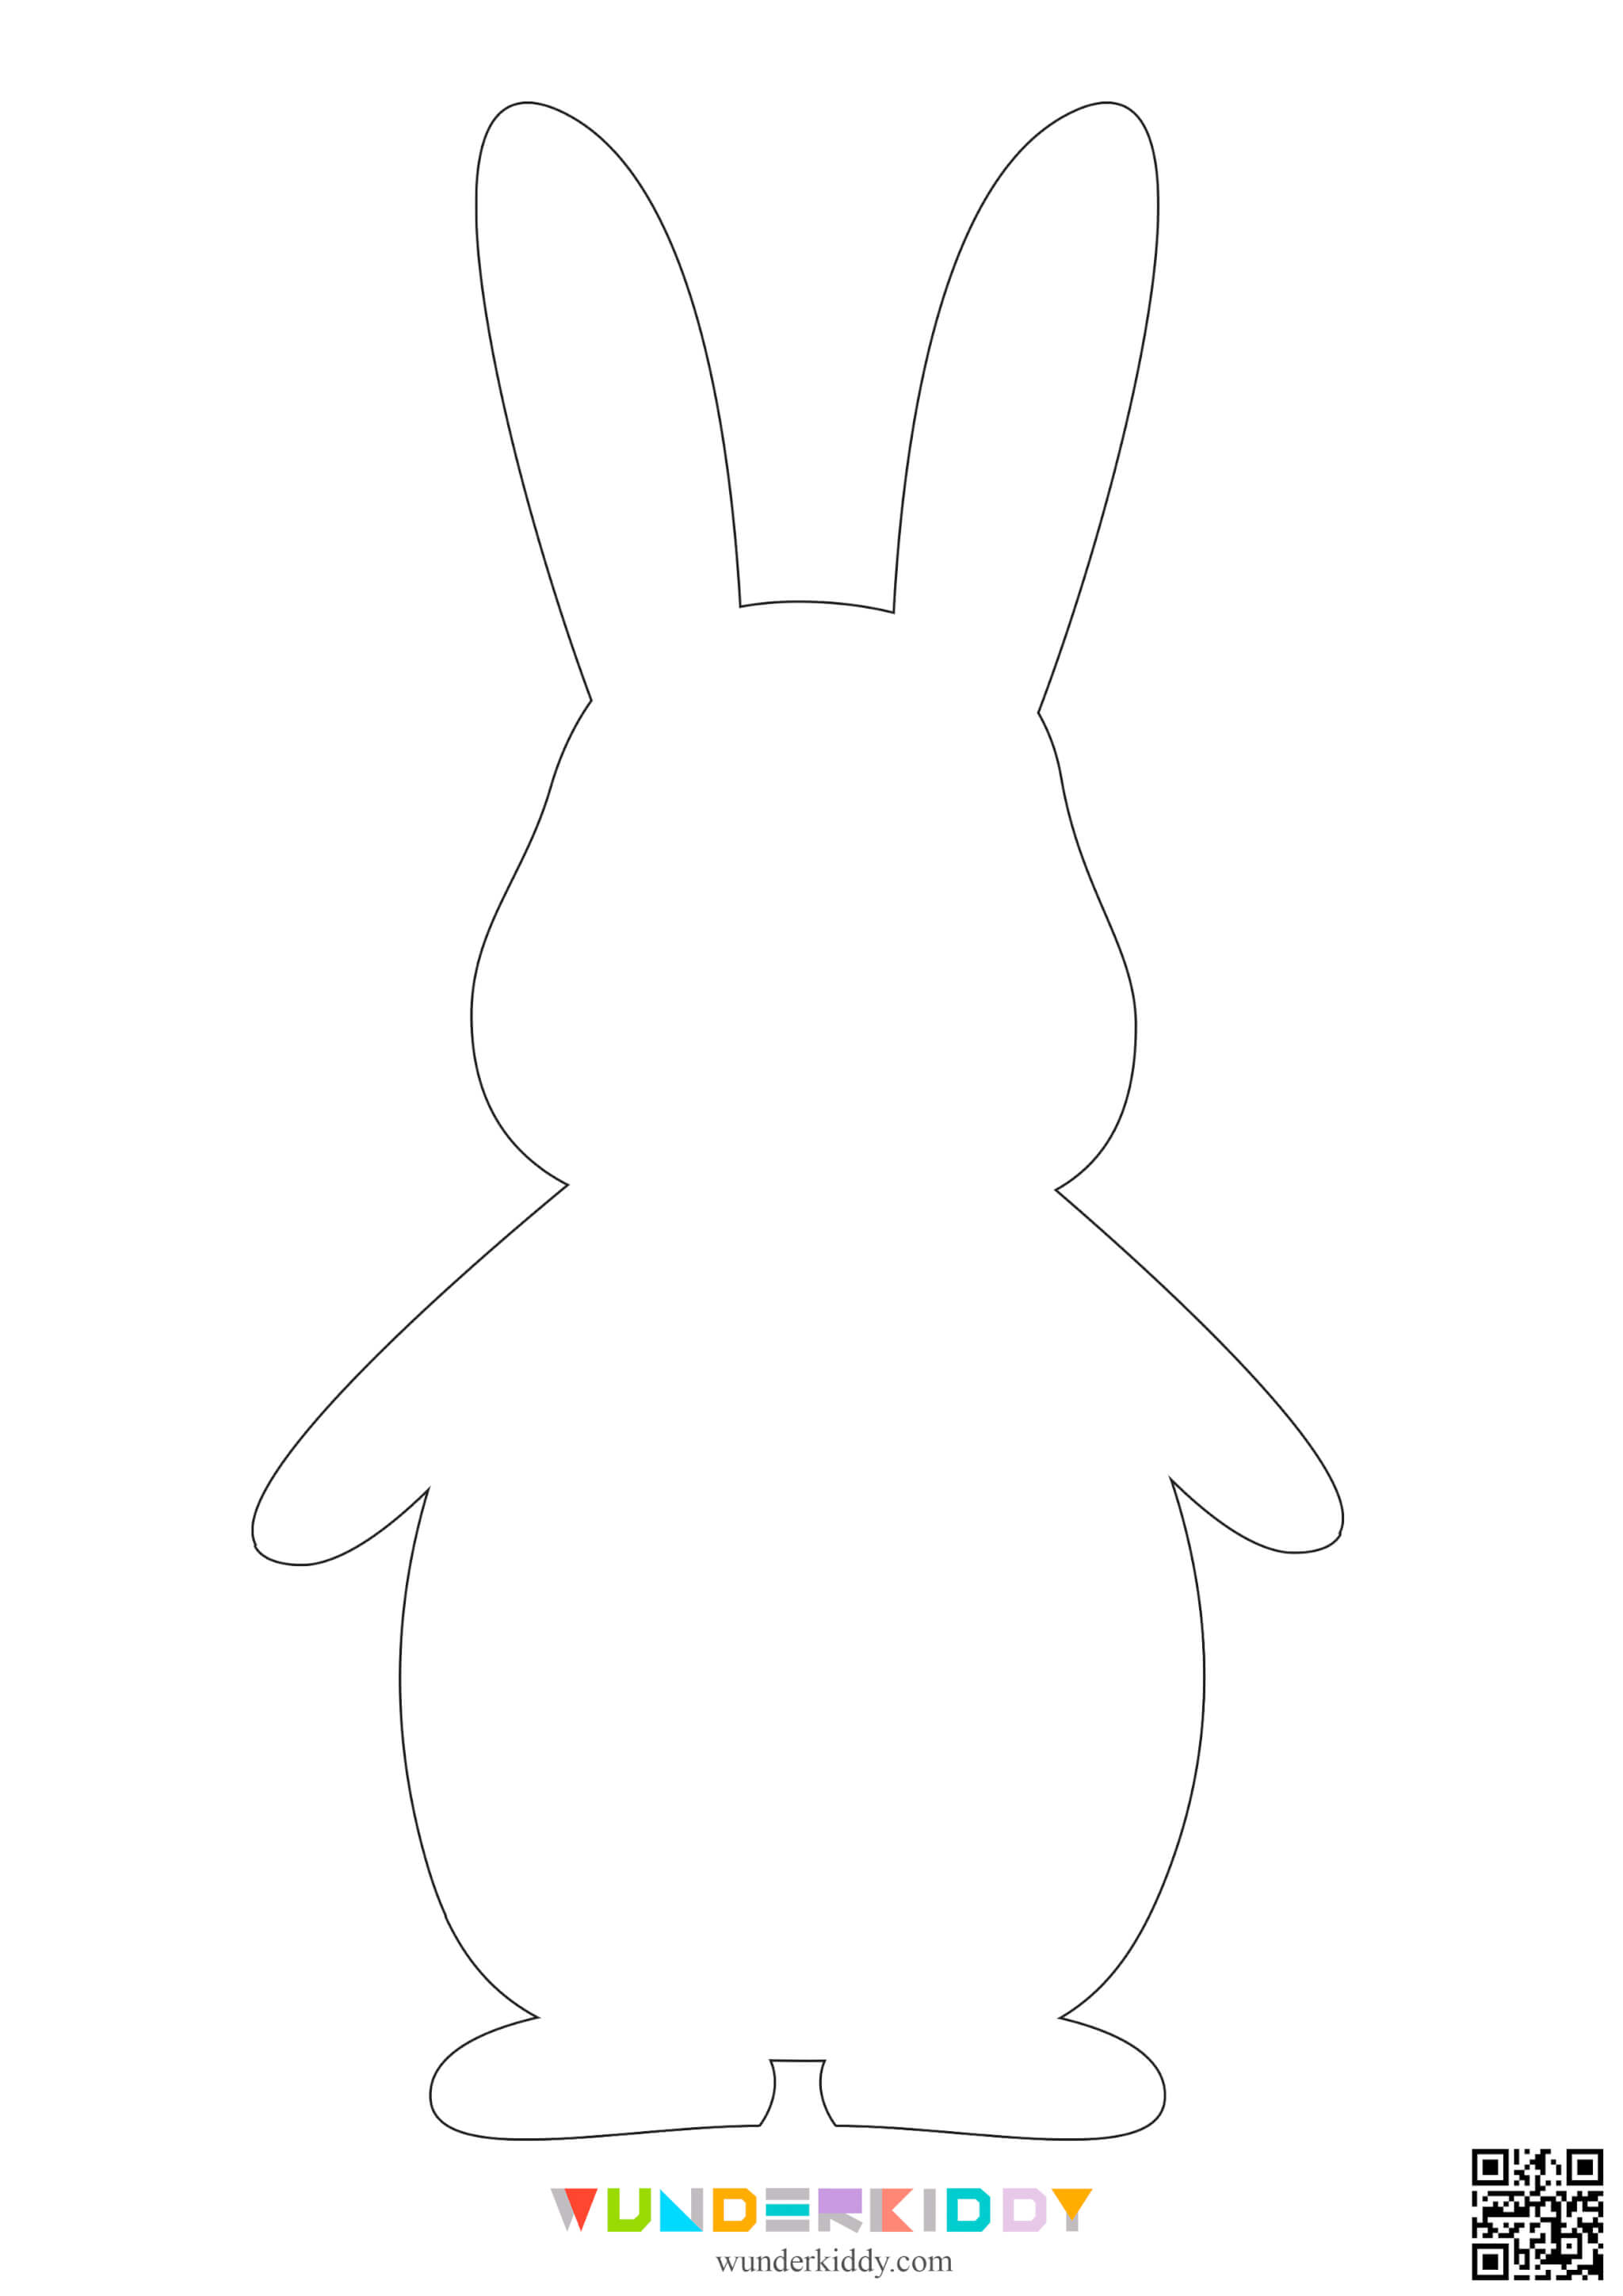 Printable Easter Bunny Template - Image 6